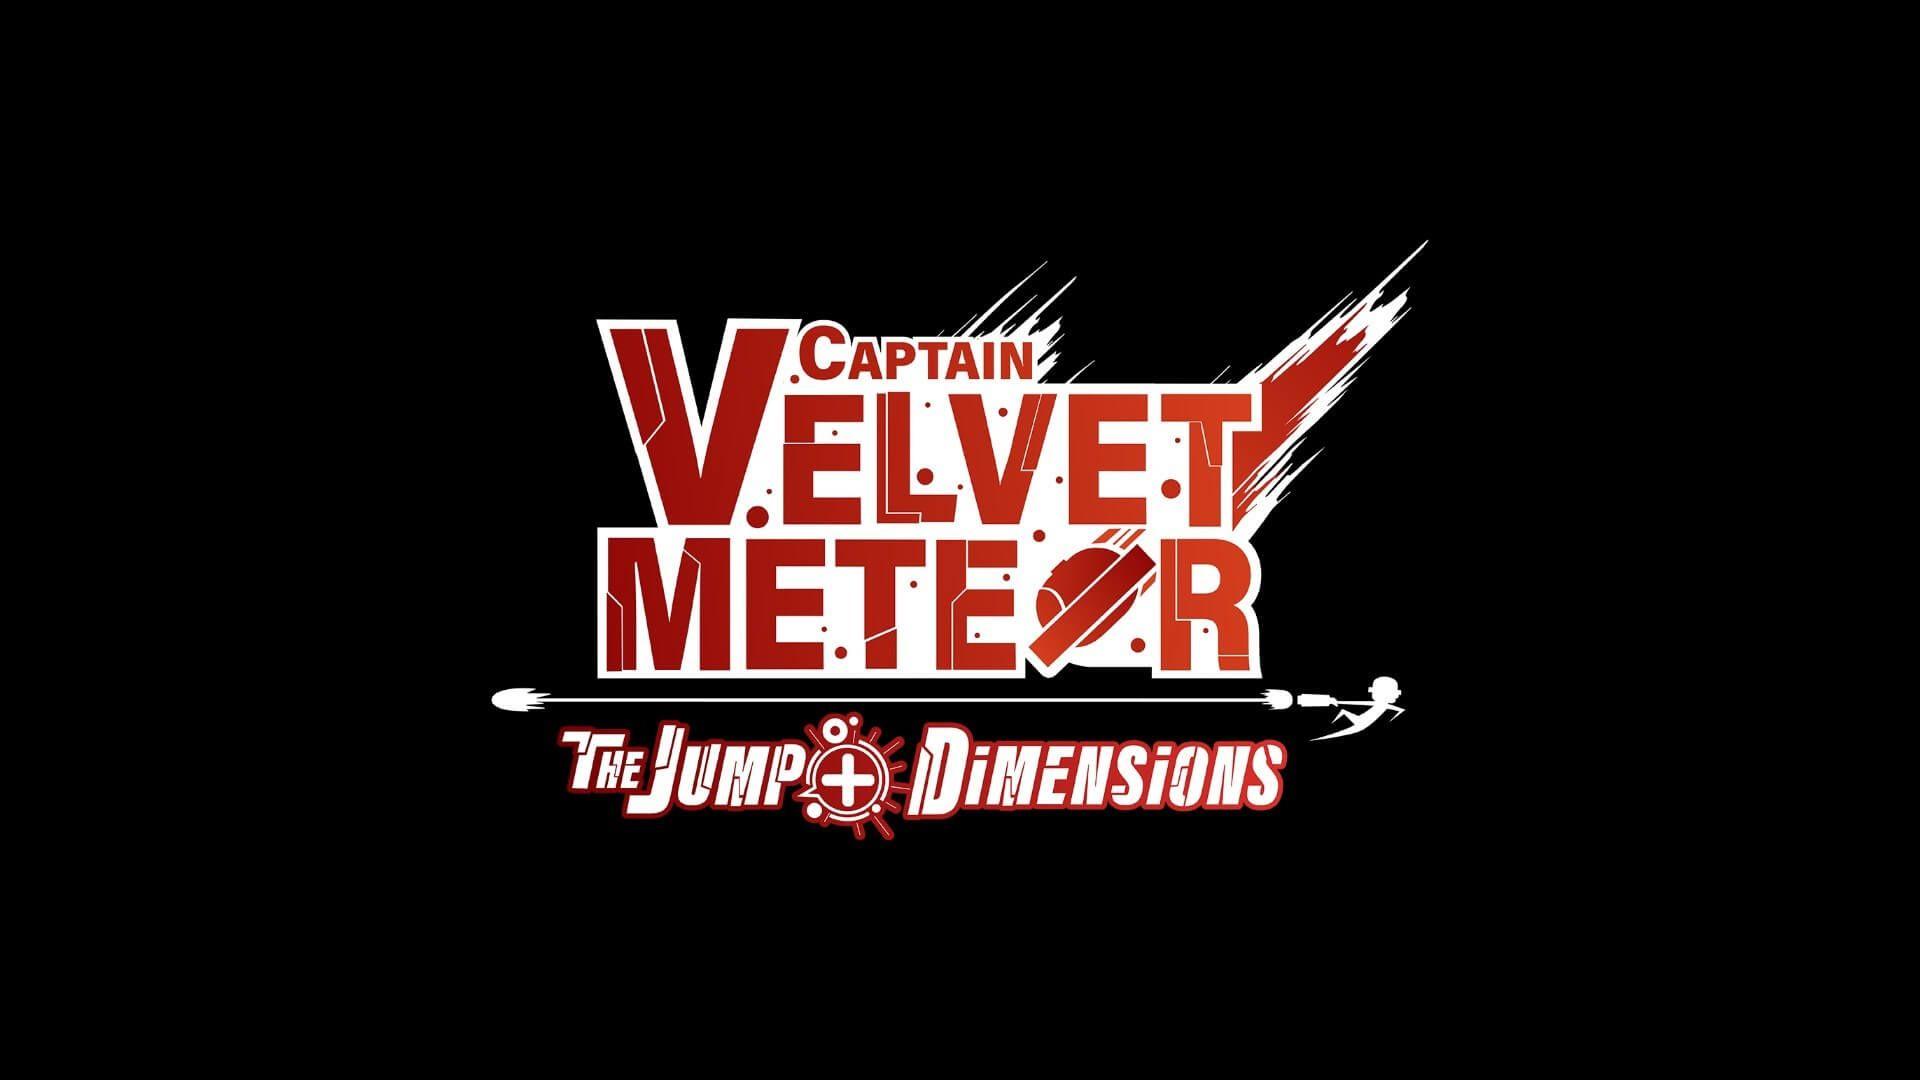 Captain Velvet Meteor: The Jump+ Dimensions